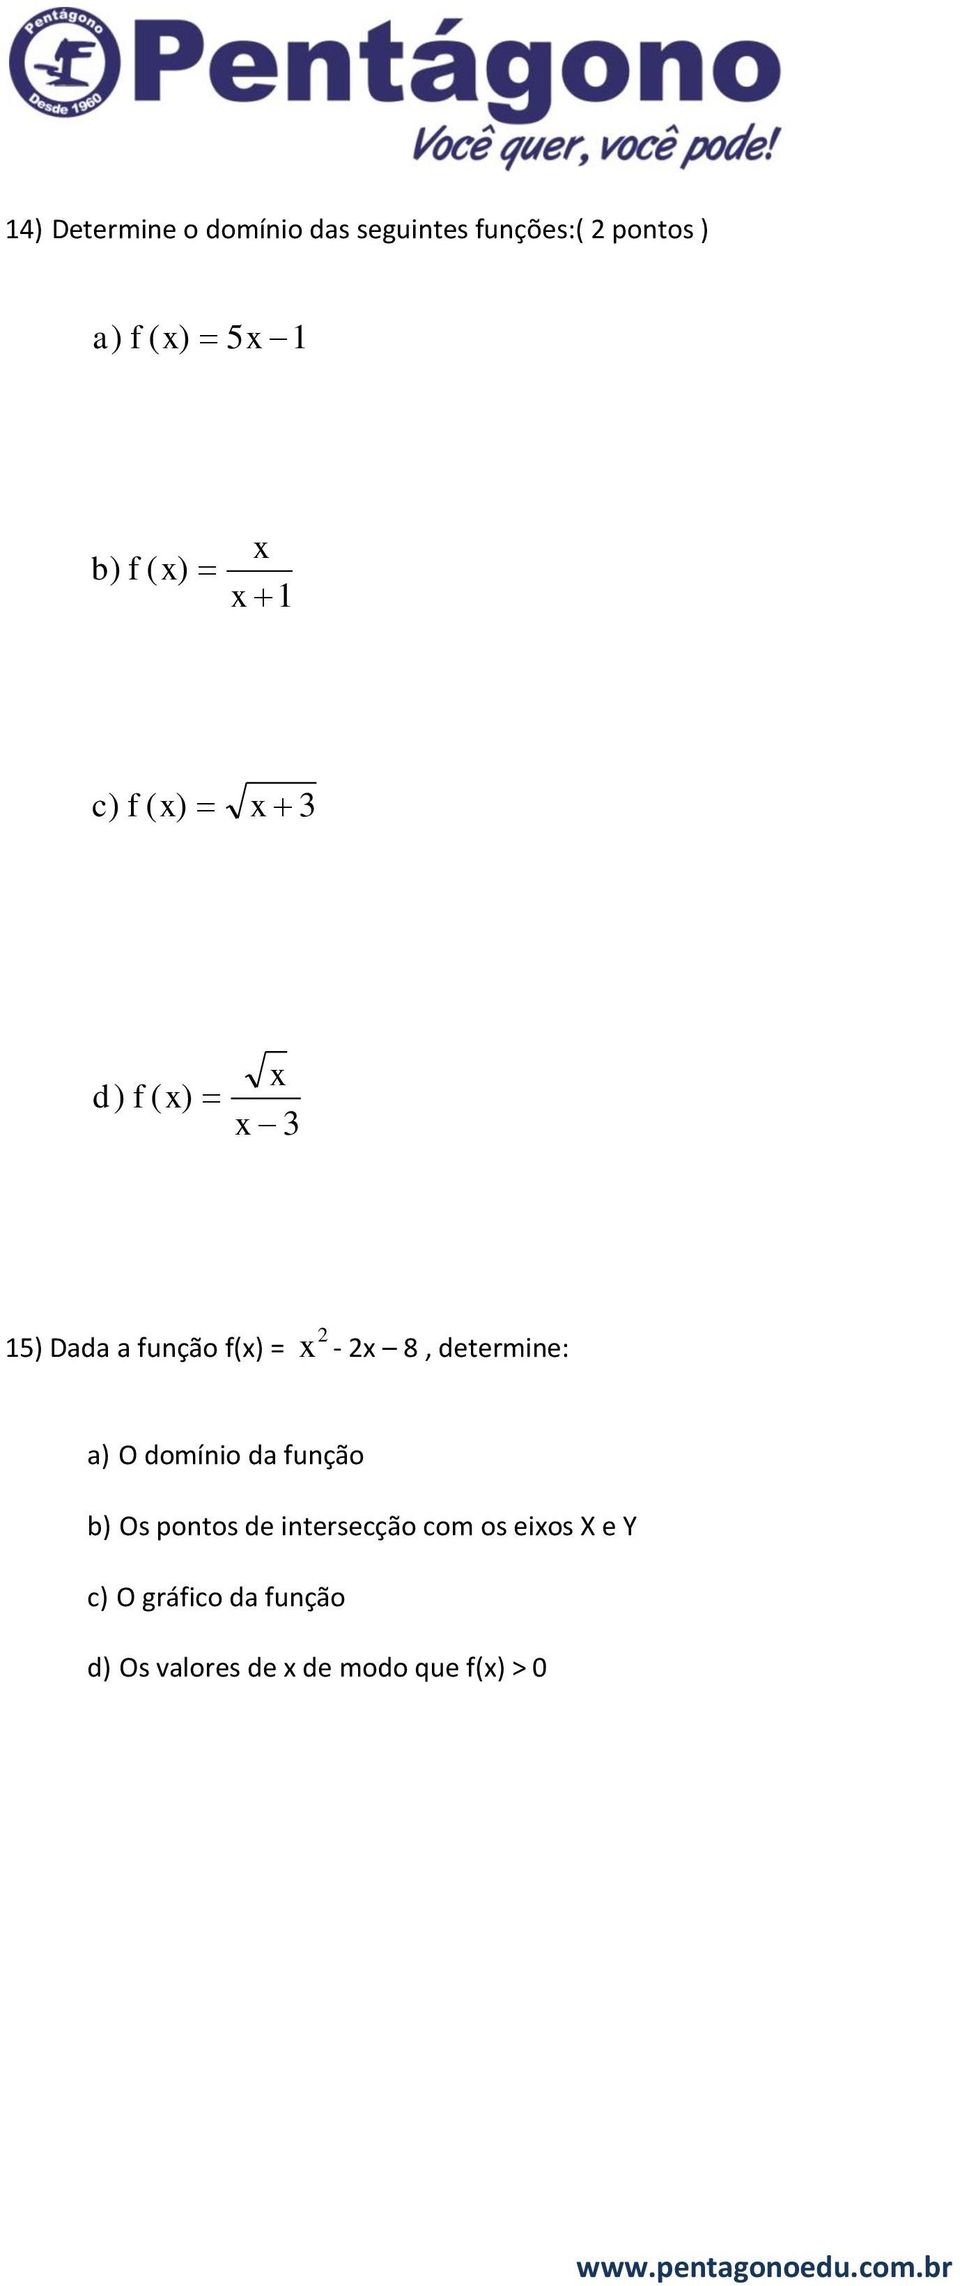 determine: a) O domínio da função b) Os pontos de intersecção com os